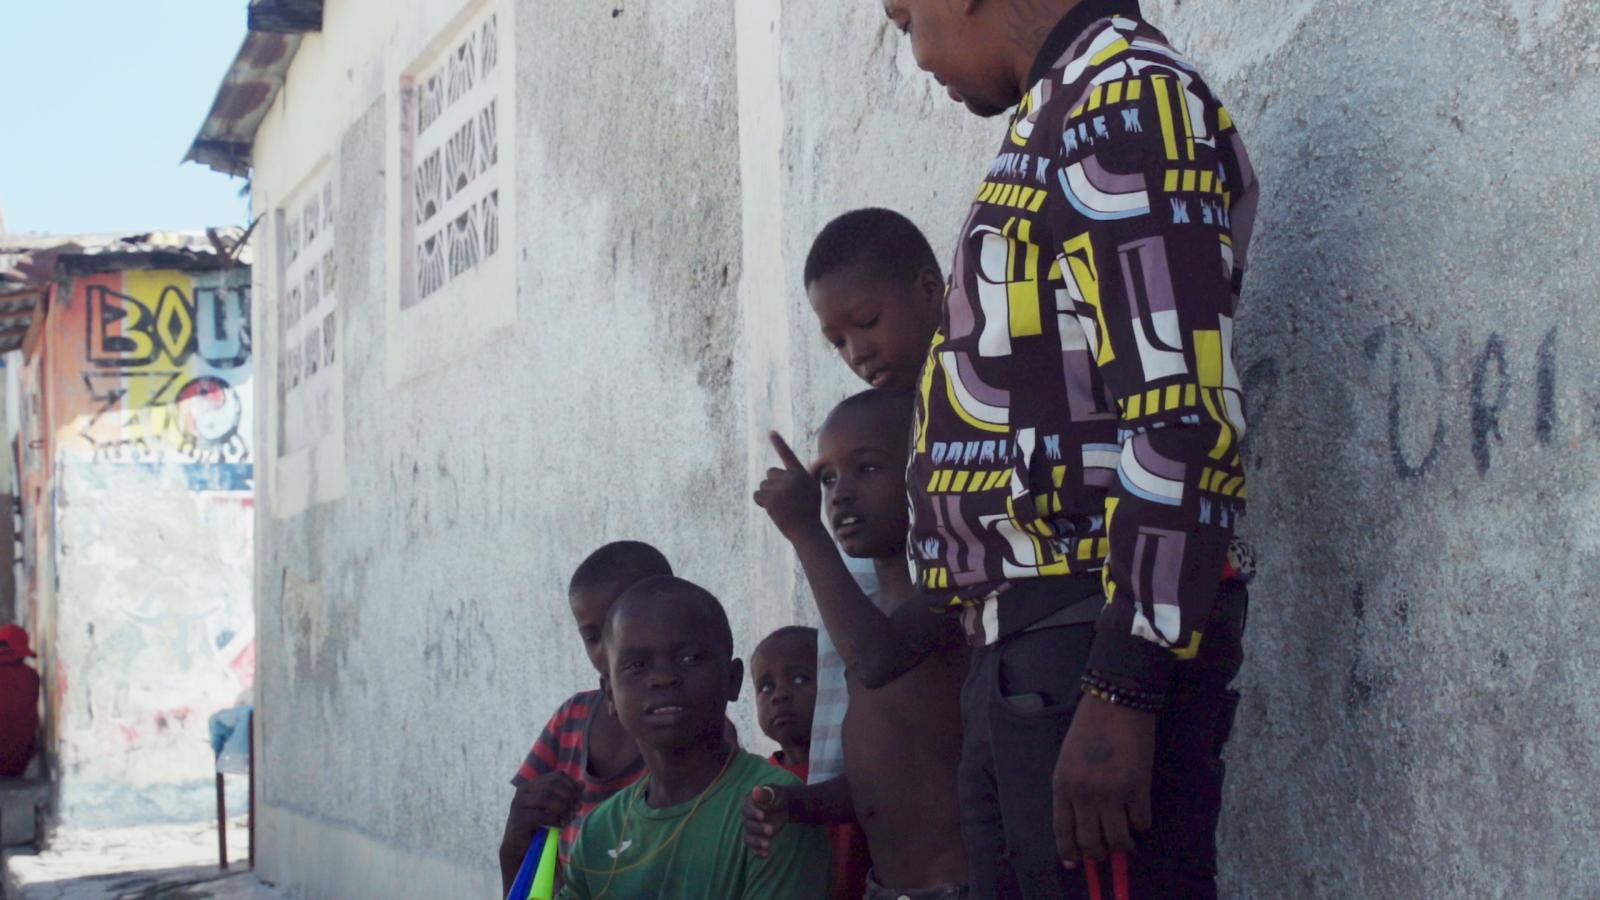 The New Humanitarian: Haiti’s gangs and its children